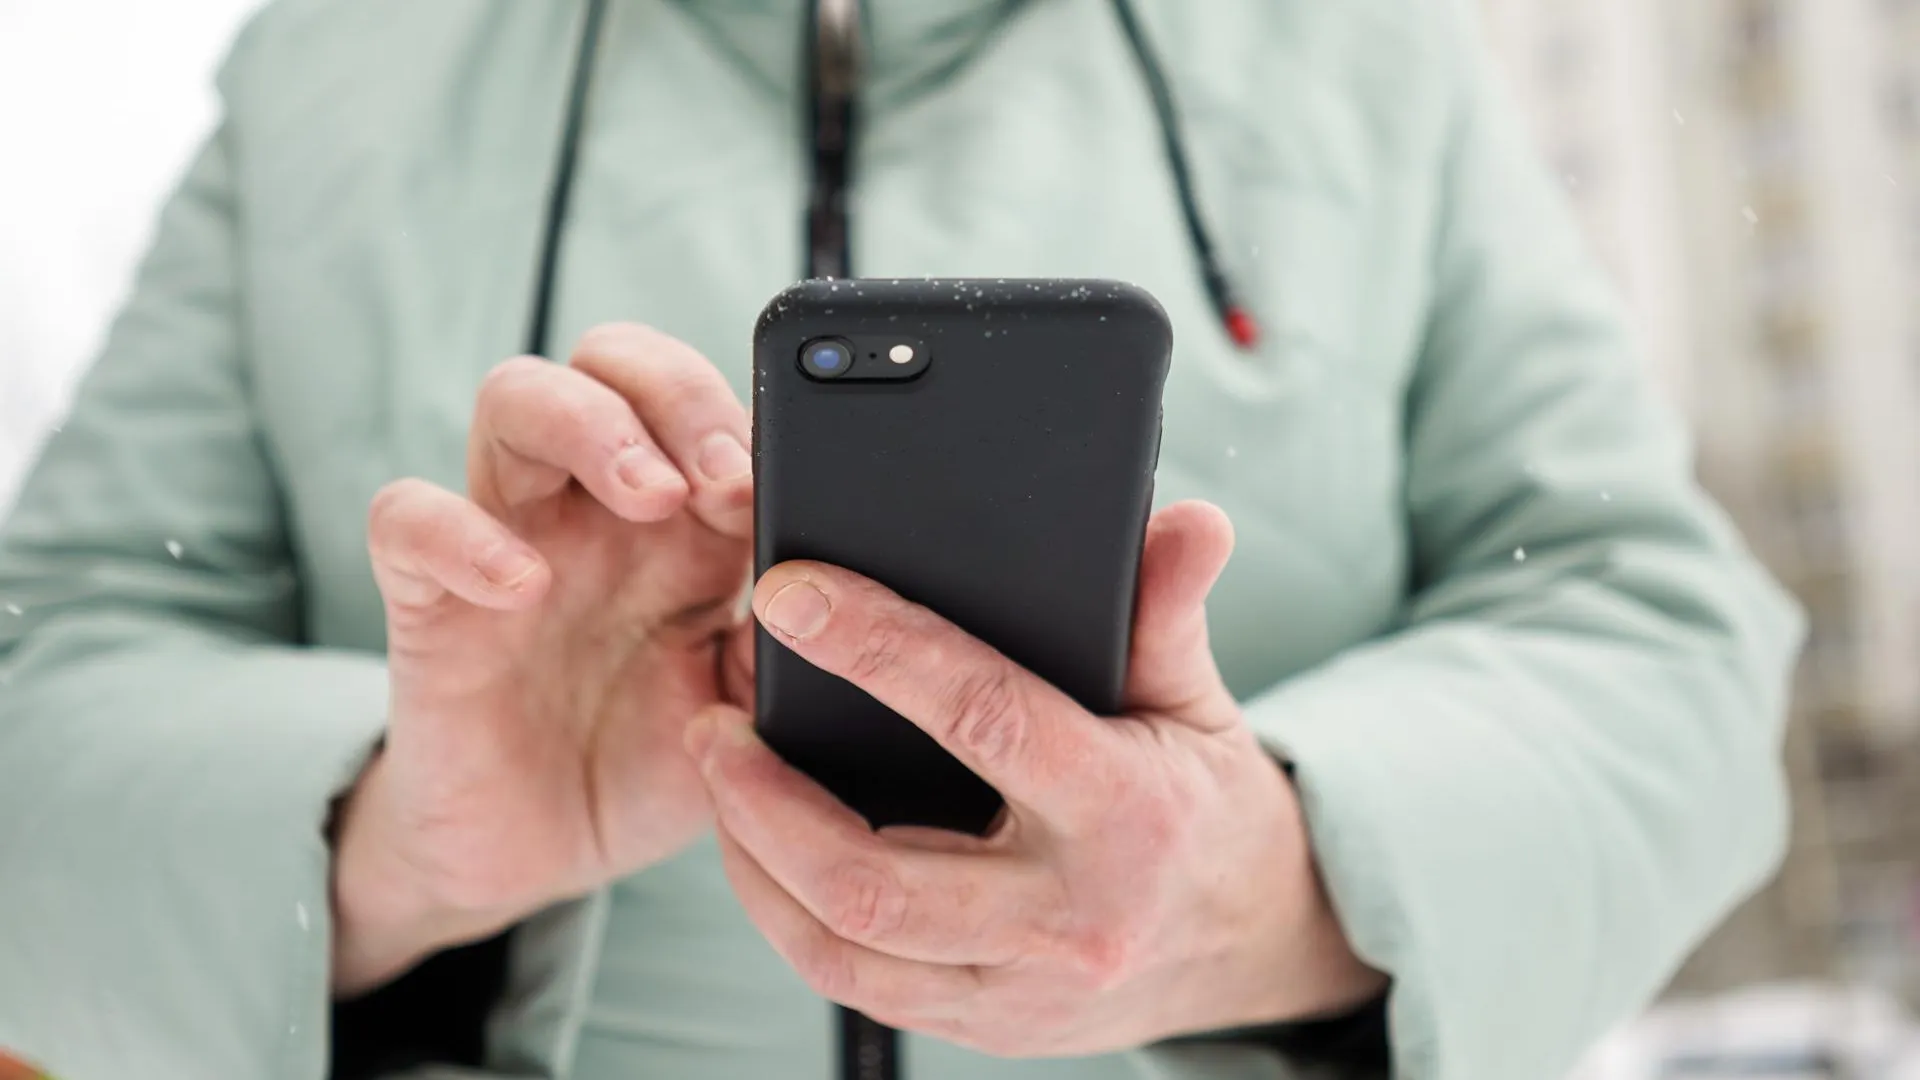 Аналитик Муртазин перечислил преимущества кнопочных телефонов над смартфонами